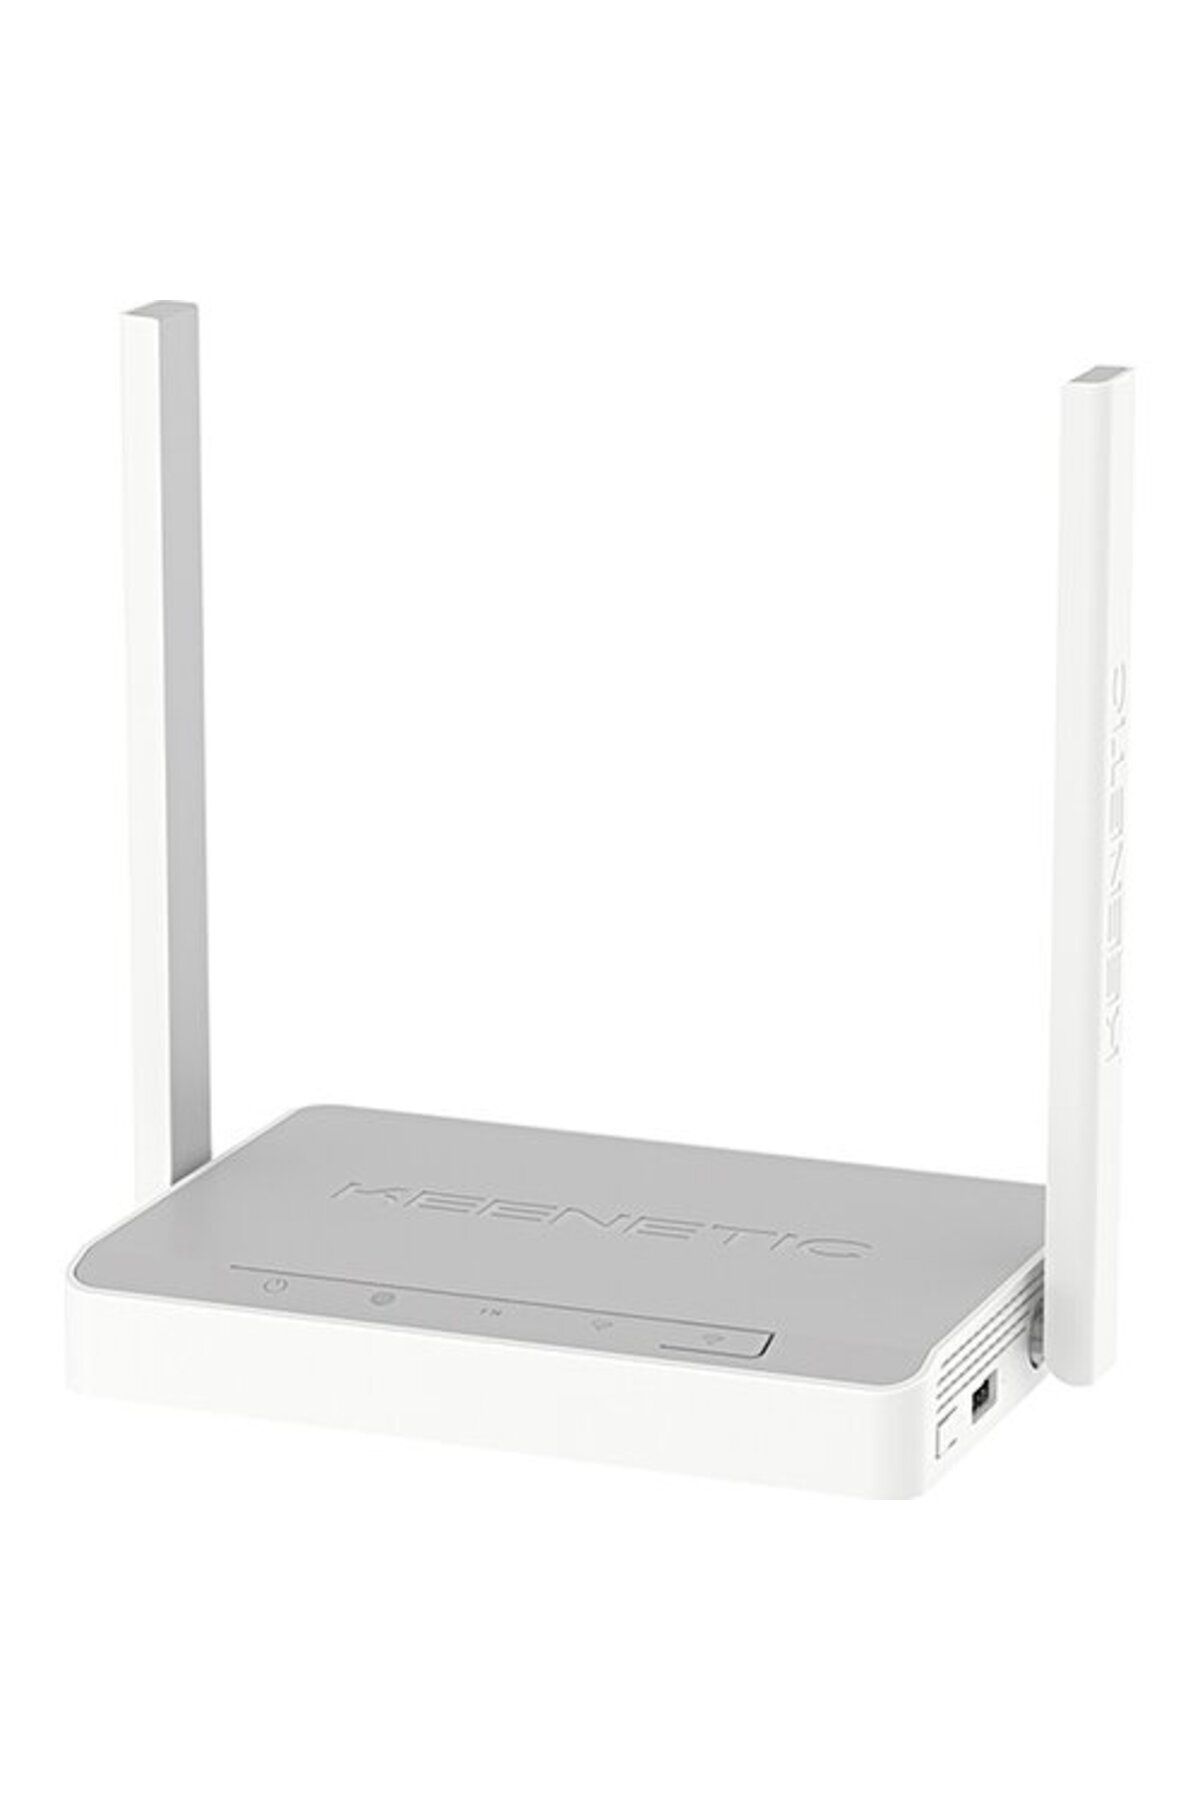 Keenetic Omni Dsl N300 Wi-fi Mesh Vdsl2/adsl2 Modem Fiber Router, 3xfastethernet, 1xgigabit Ethernet, Usb